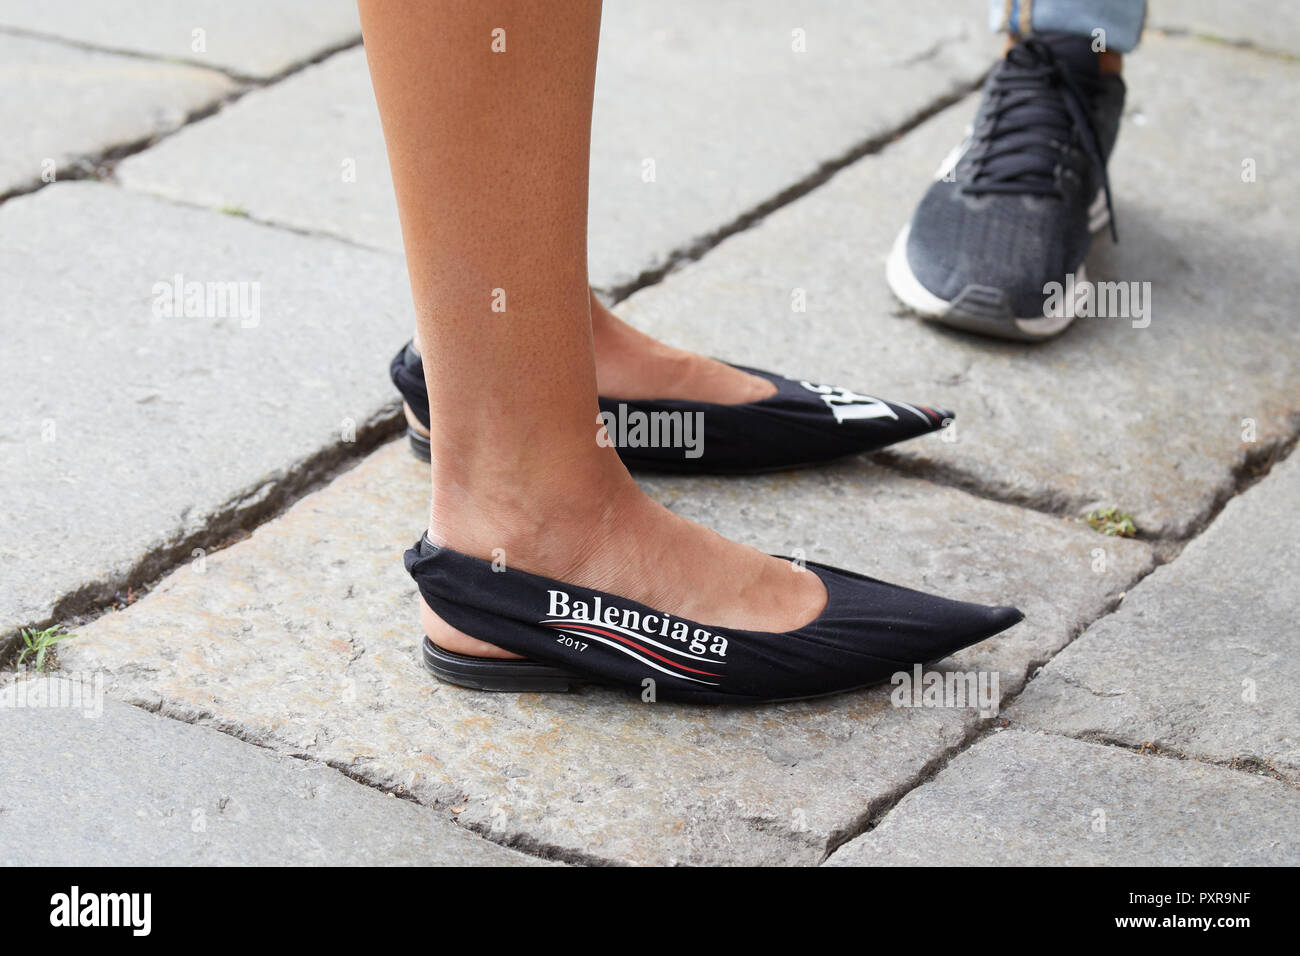 Milán, Italia - 22 de septiembre de 2018: Mujer con negro Balenciaga zapatos de antes de la filosofía, el Fashion Show, la Semana de moda de Milán street Fotografía